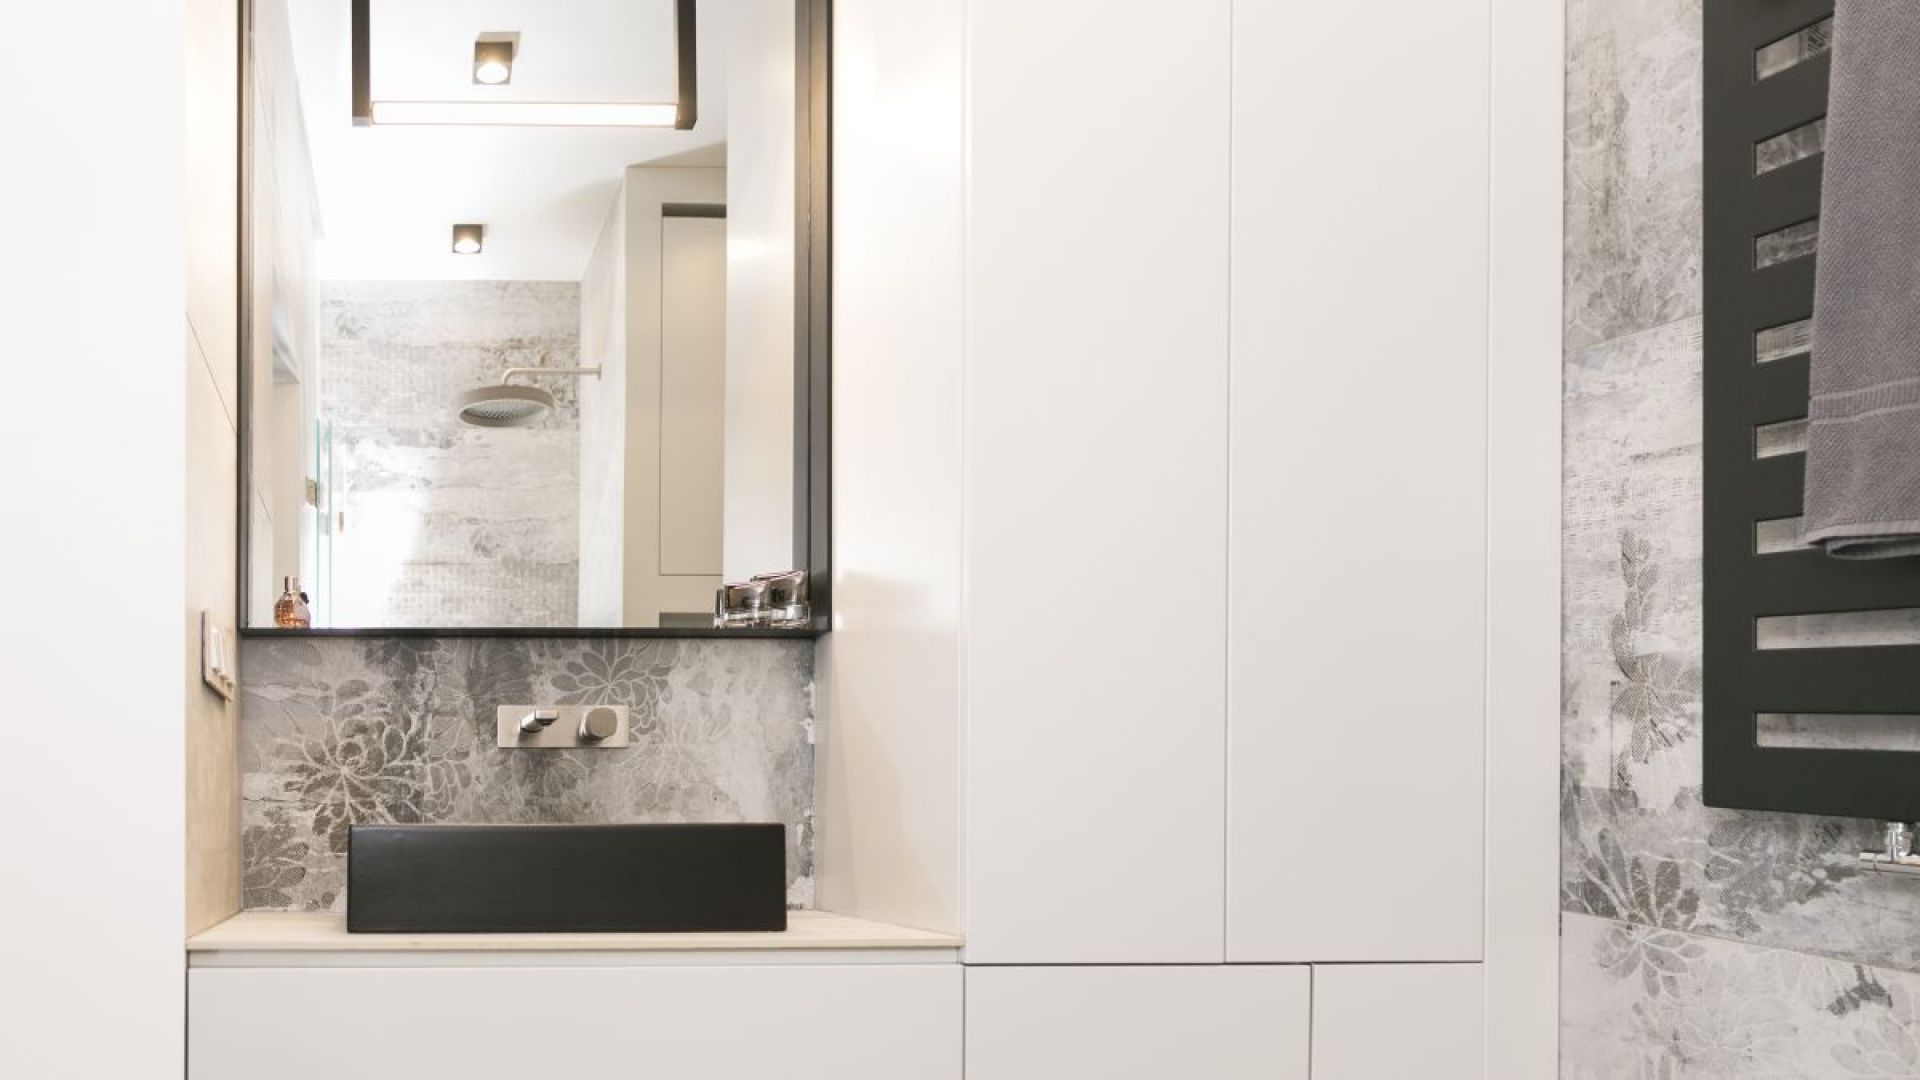 W łazience duże wrażenie robią ręcznie wykonywane baterie włoskiej marki Ritmonio, utrzymane w industrialnym stylu, które uwodzą minimalistyczną formą, ubraną w szczotkowaną stal i betonowe dodatki. Projekt: 3DProjekt architektura.